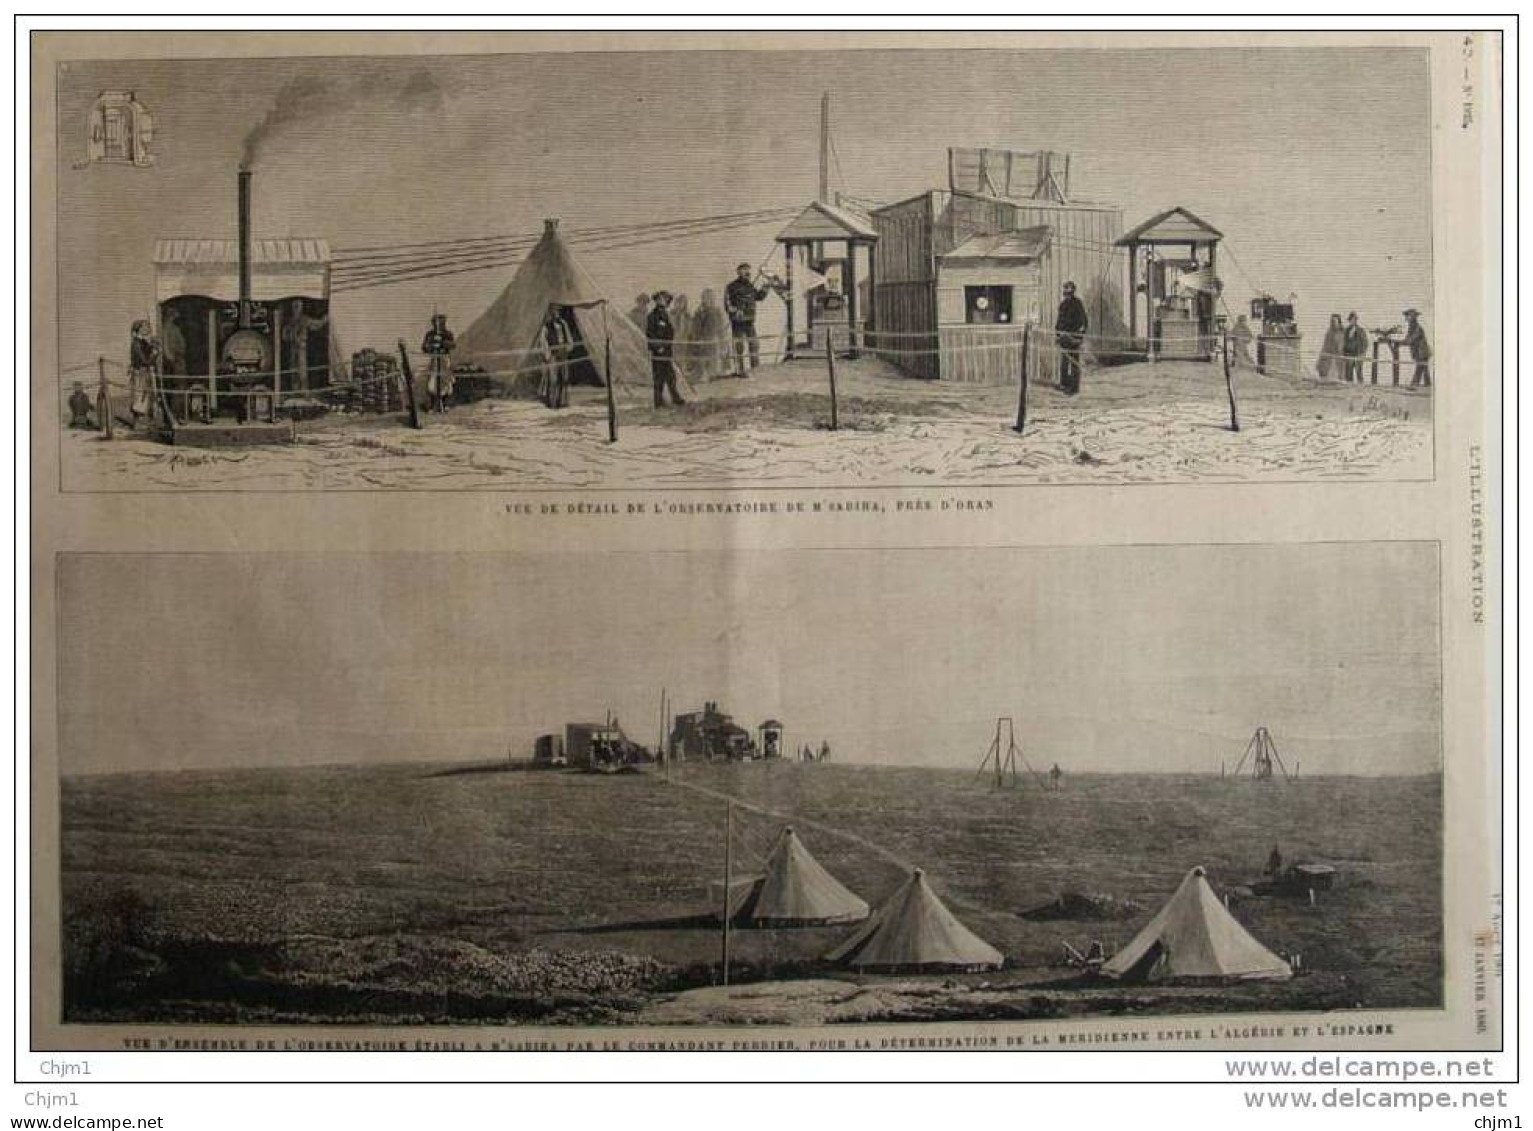 Observatoire De M&acute;Sabiha Près D&acute;Oran - Page Original - 1880 - Documenti Storici